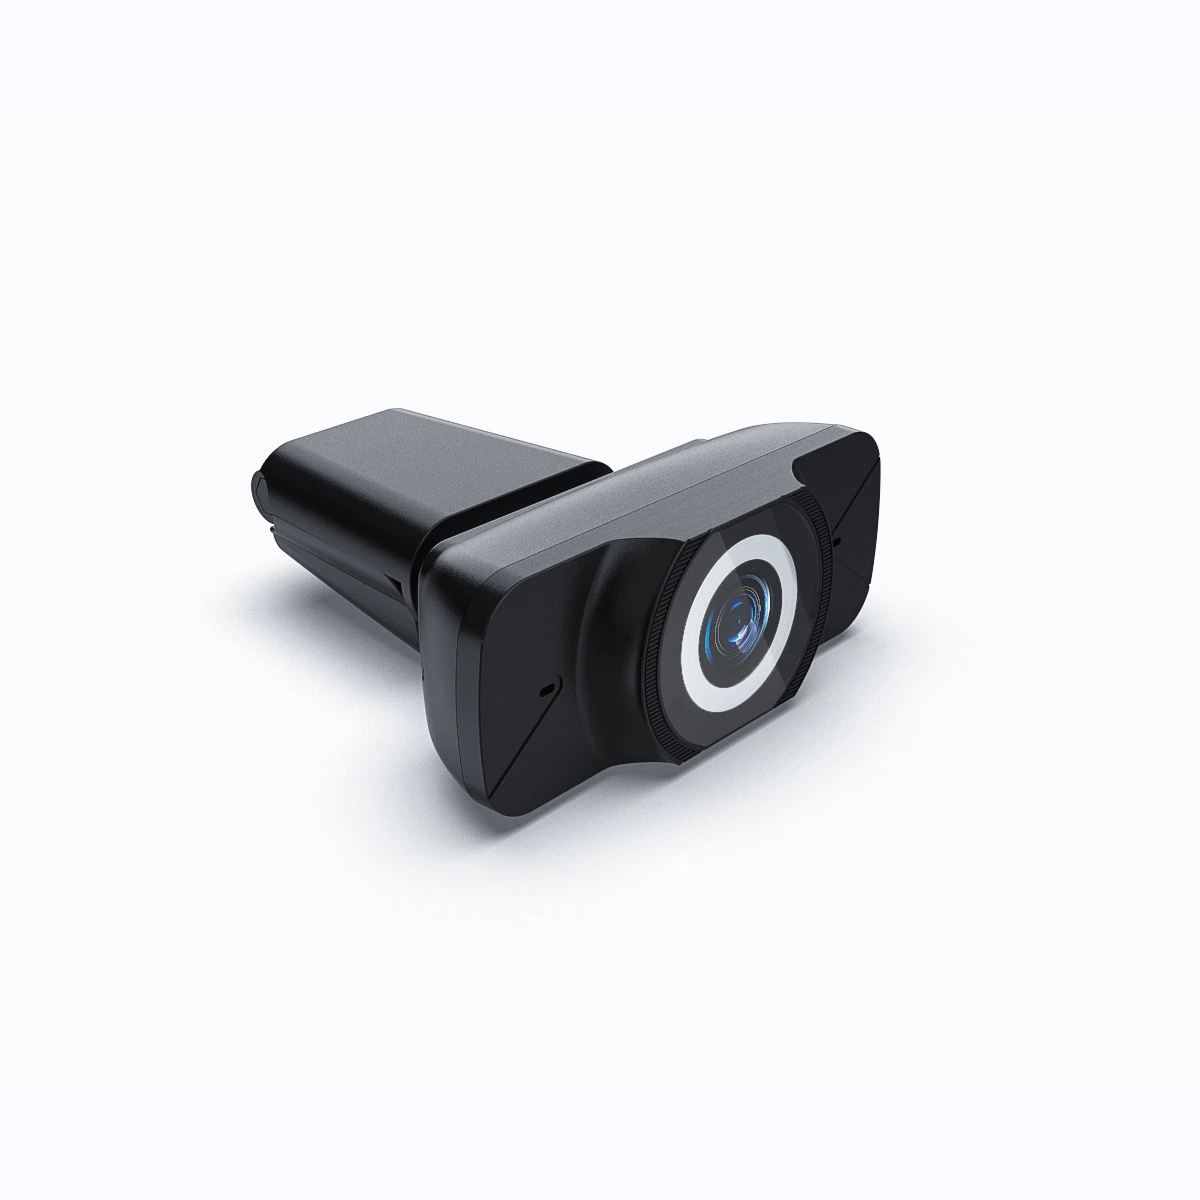 Оптовая торговля Fullhd 1080P 30 кадров веб-камера USB портативного компьютера широкоугольный объектив видео конференции камера для ПК